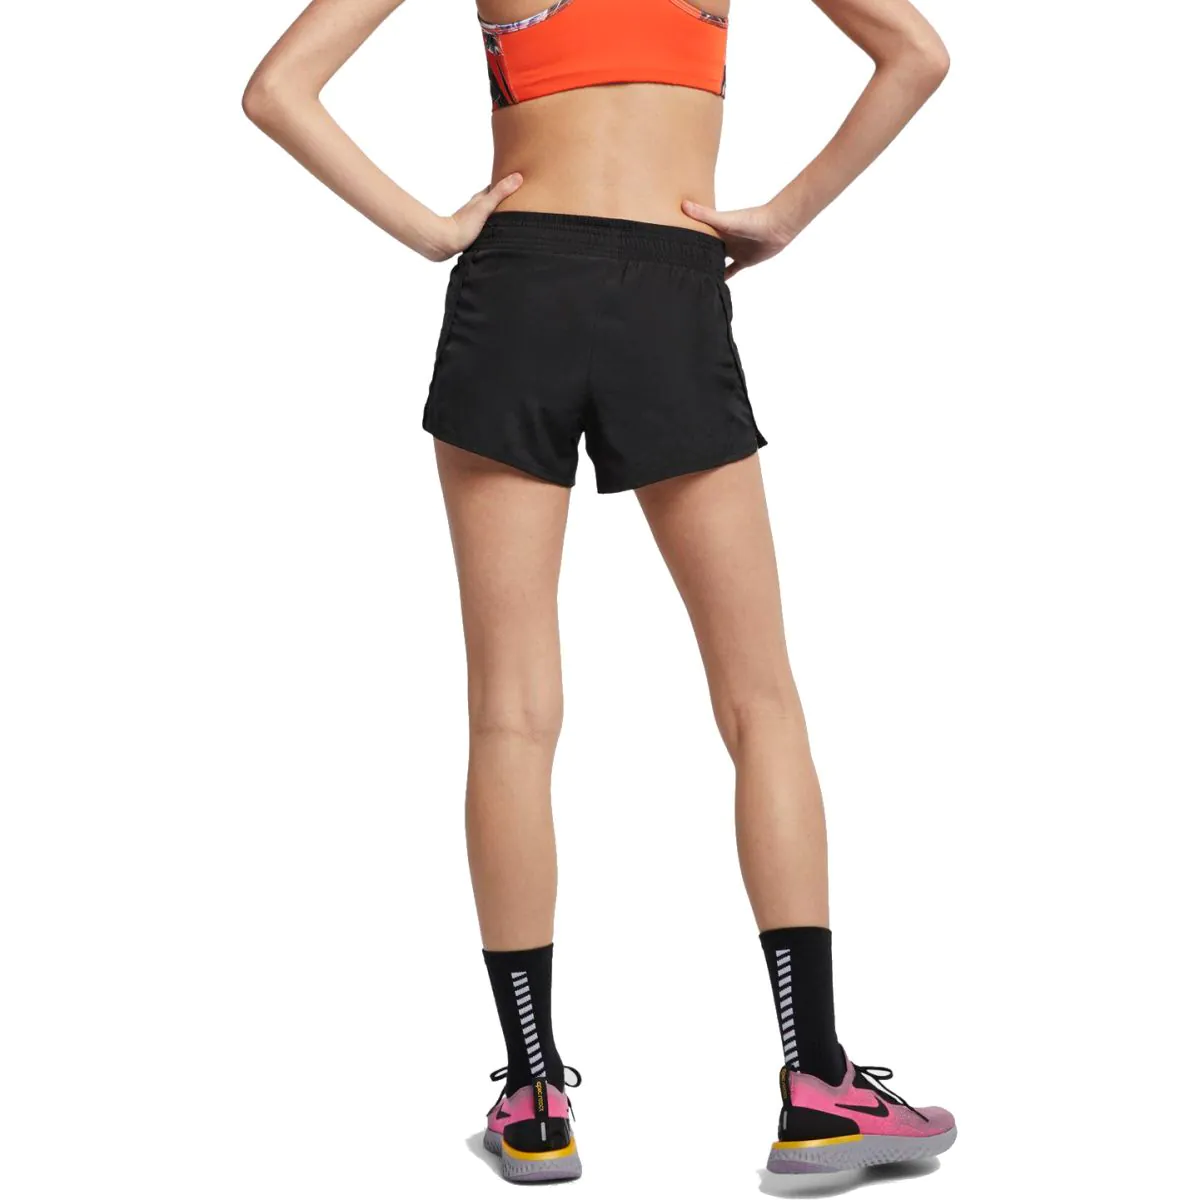 Nike Women's Team 10K Running Short